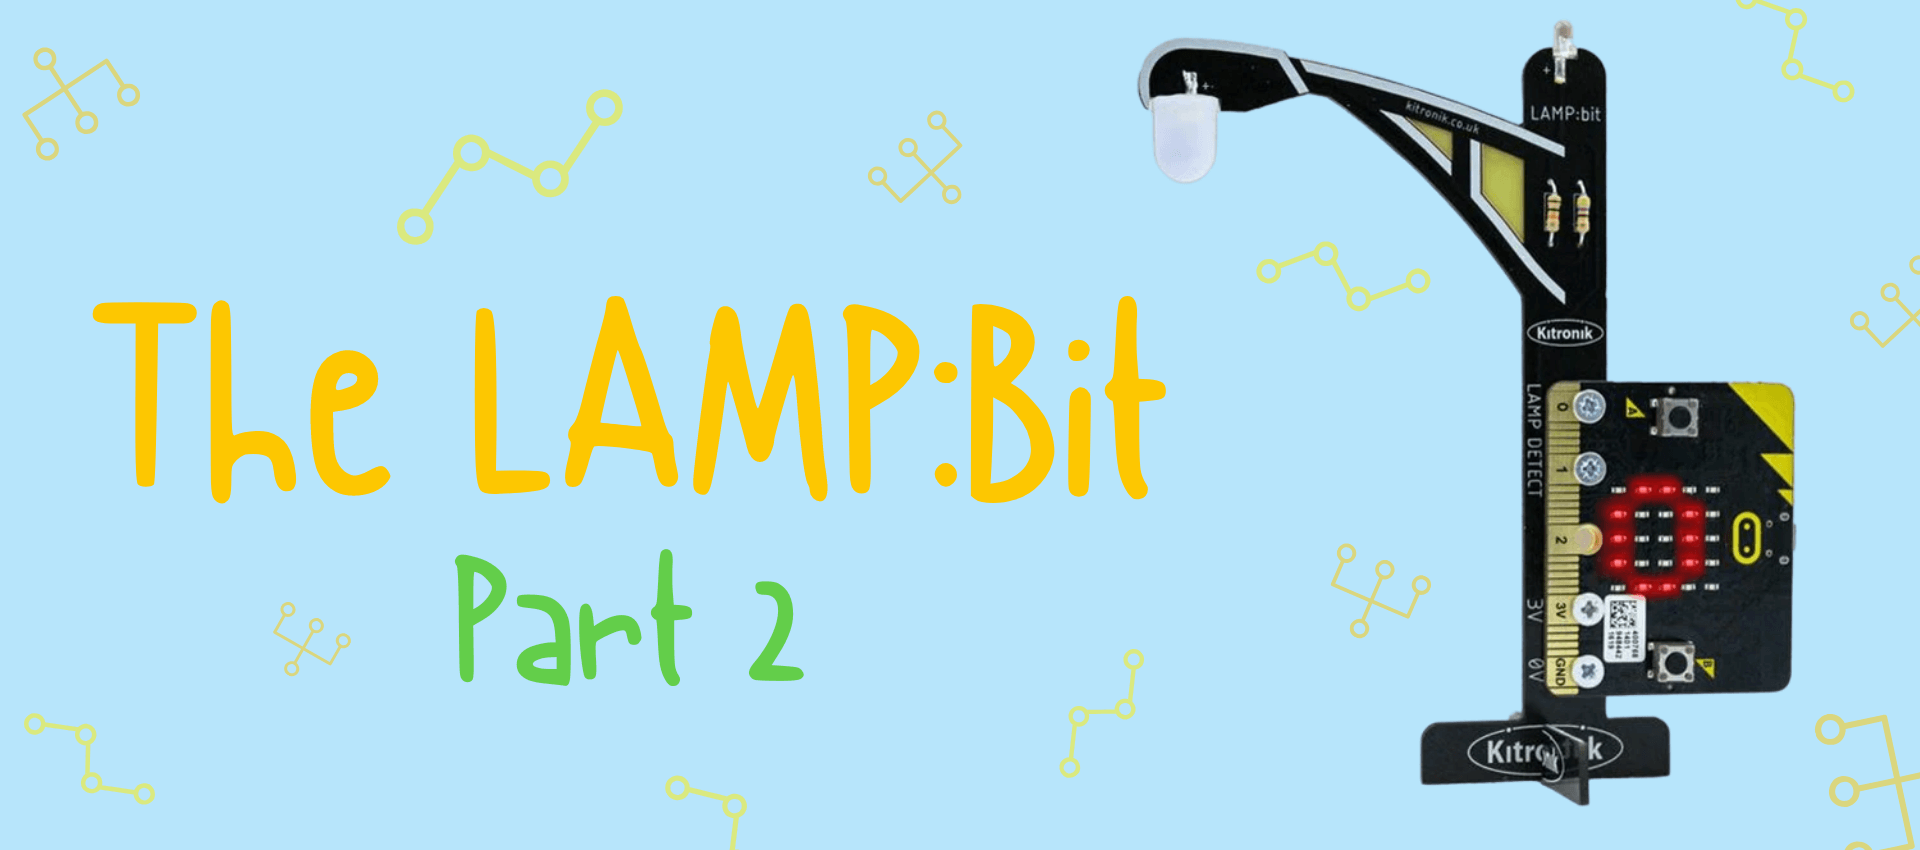 The LAMP:Bit - Part 2